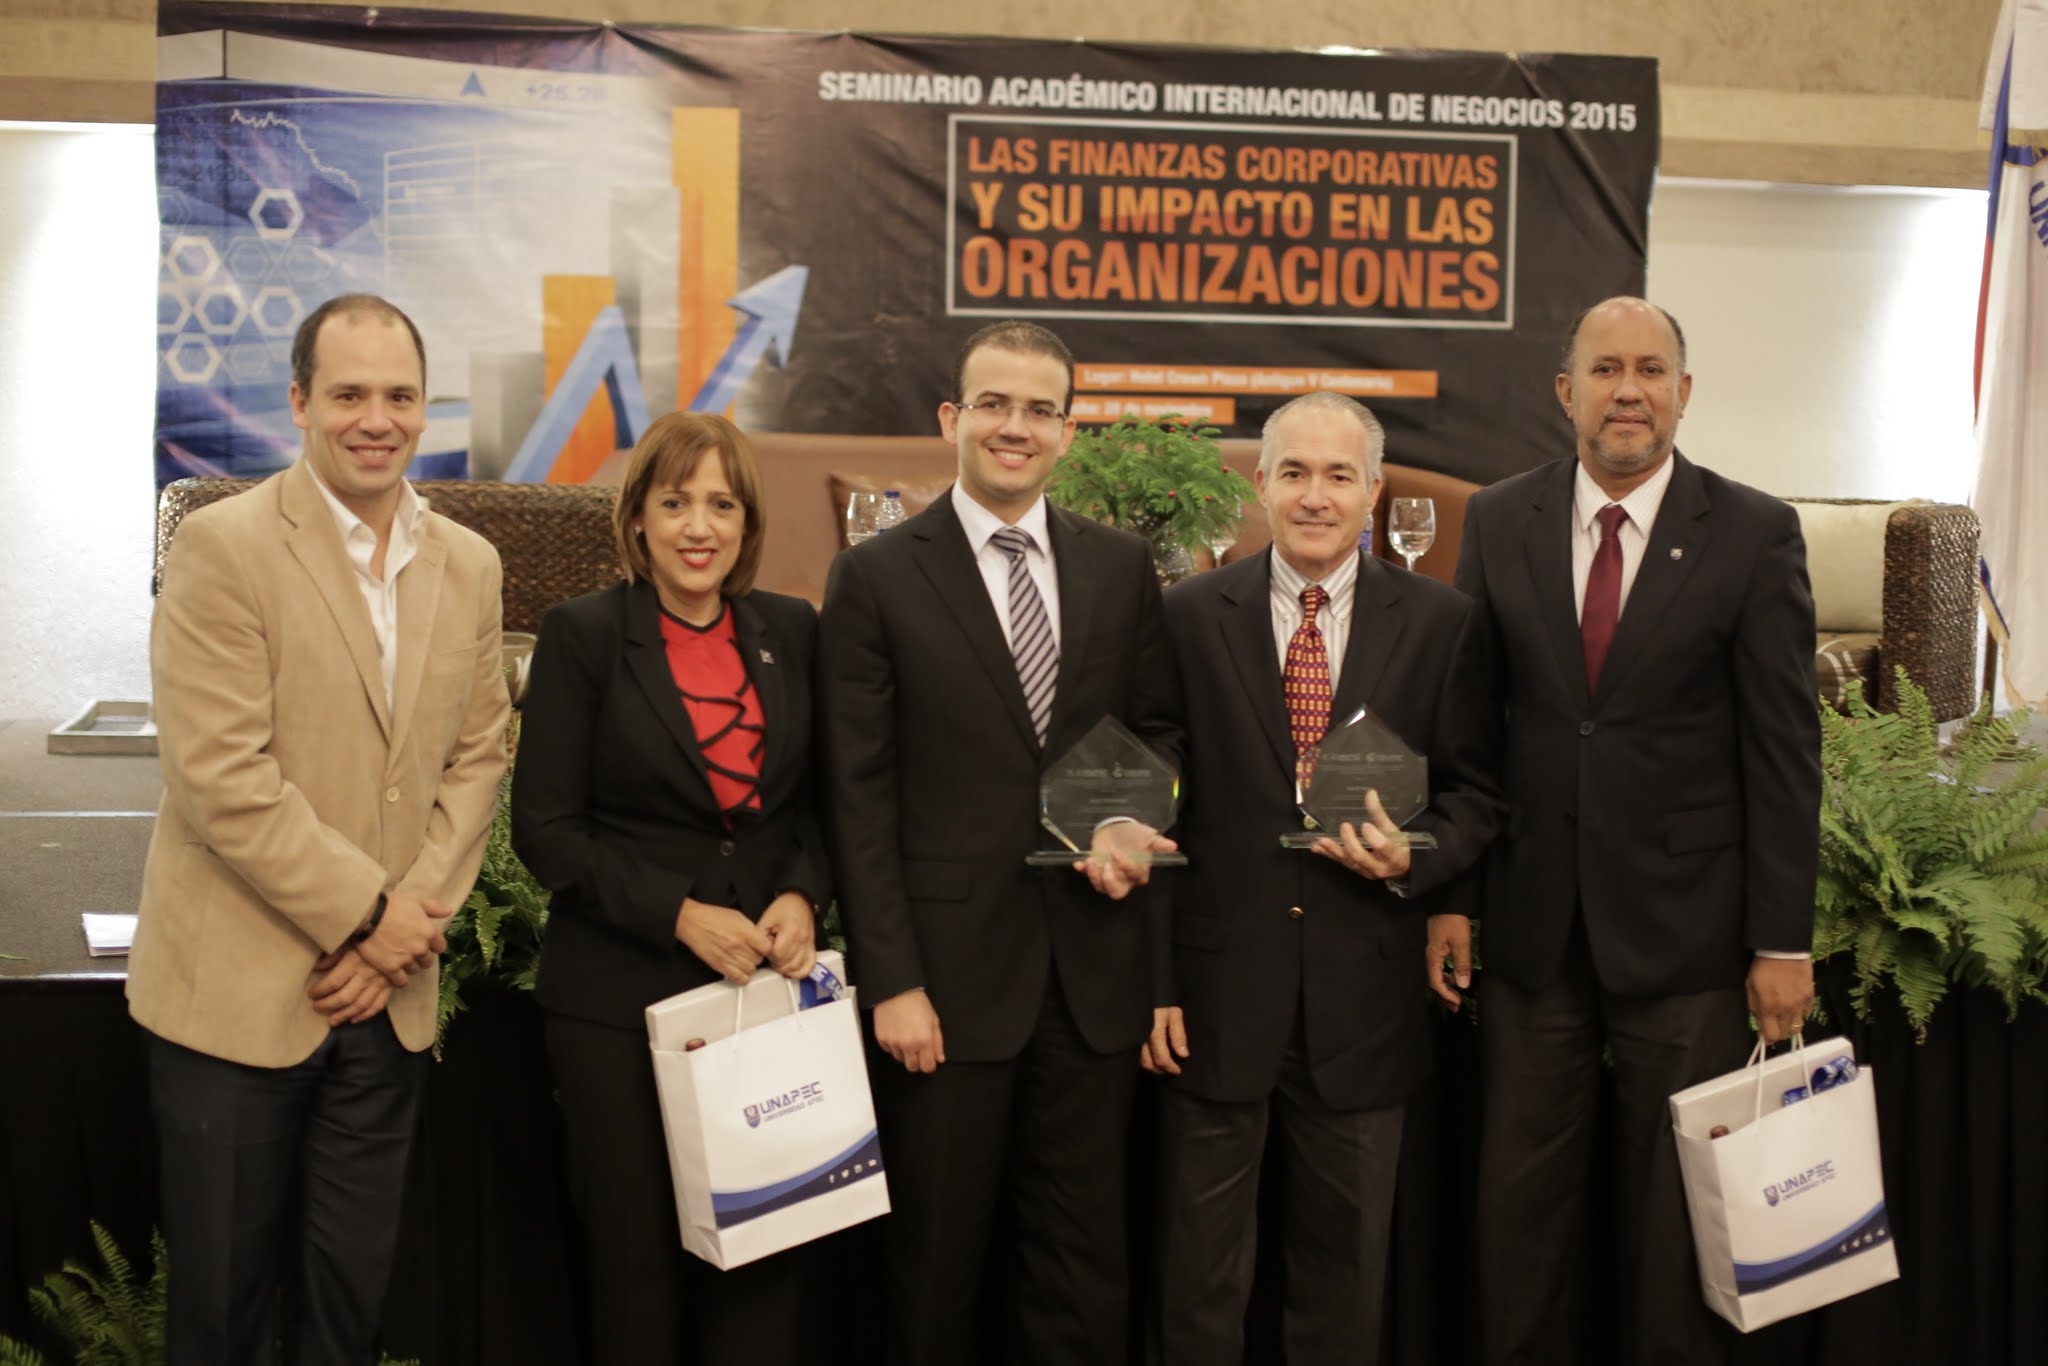 Los panelistas y el moderador del pane recibieron placas de reconocimiento por su participación en el seminario.